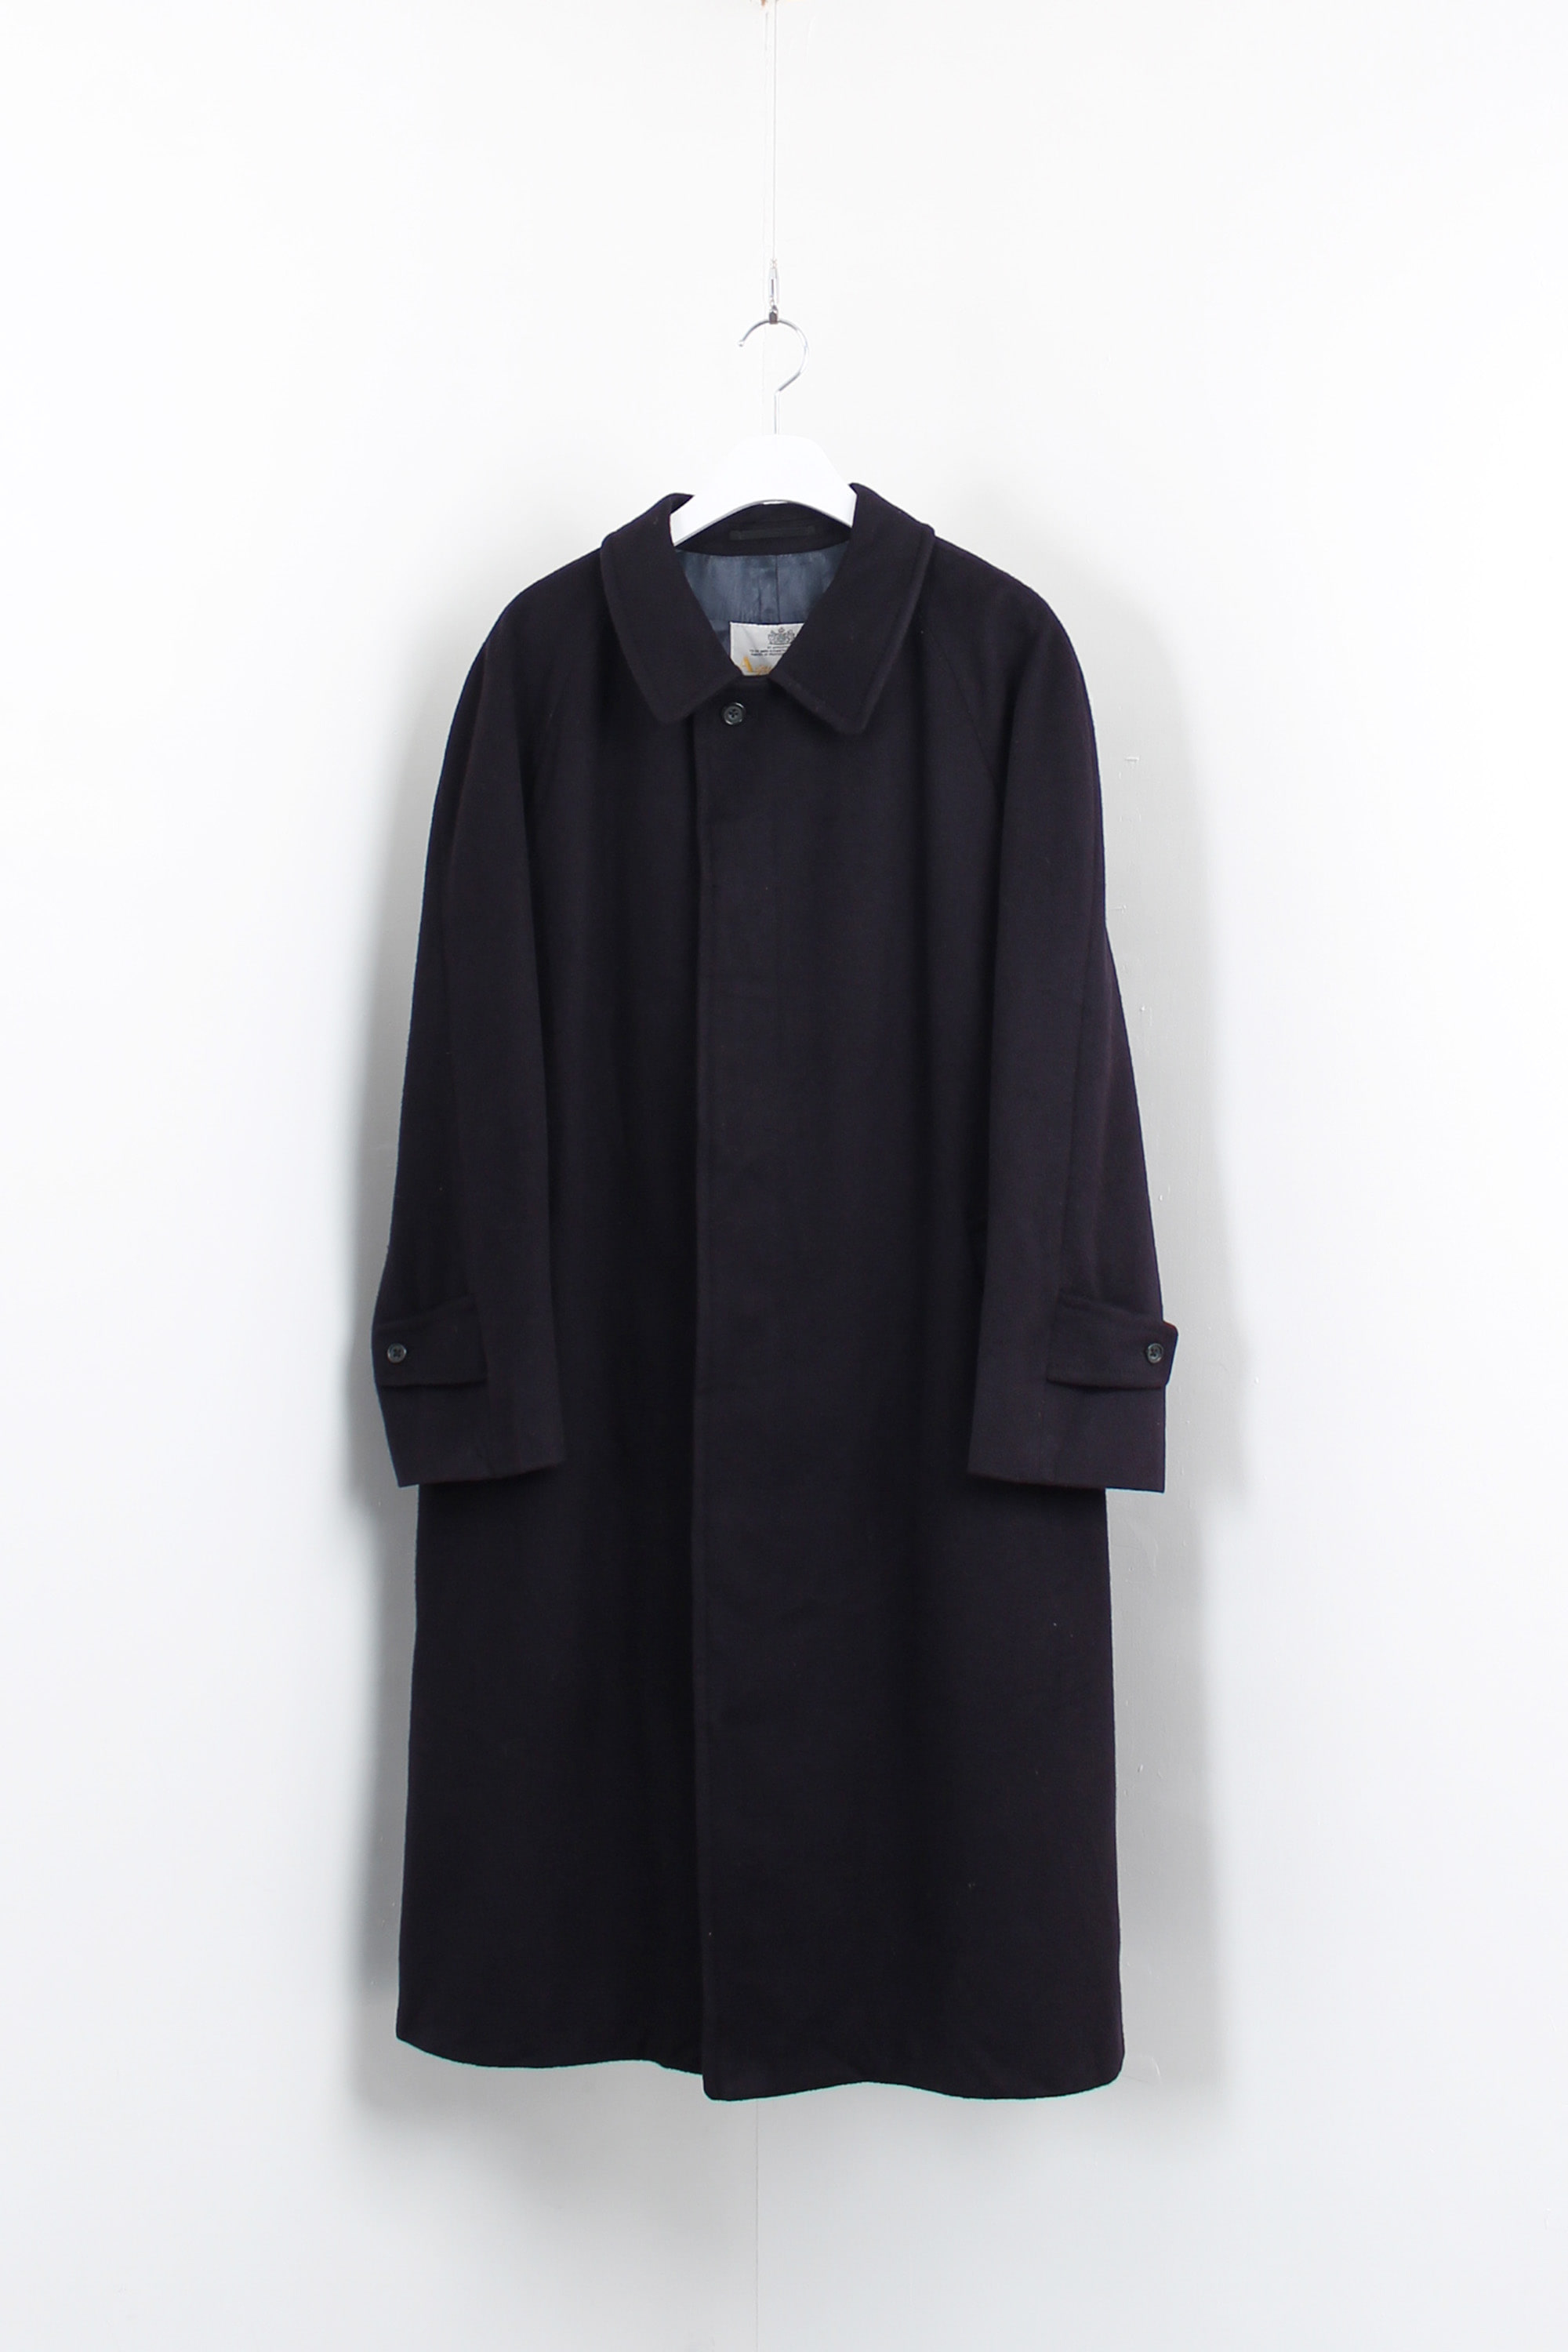 Aquascutum cashmere coat